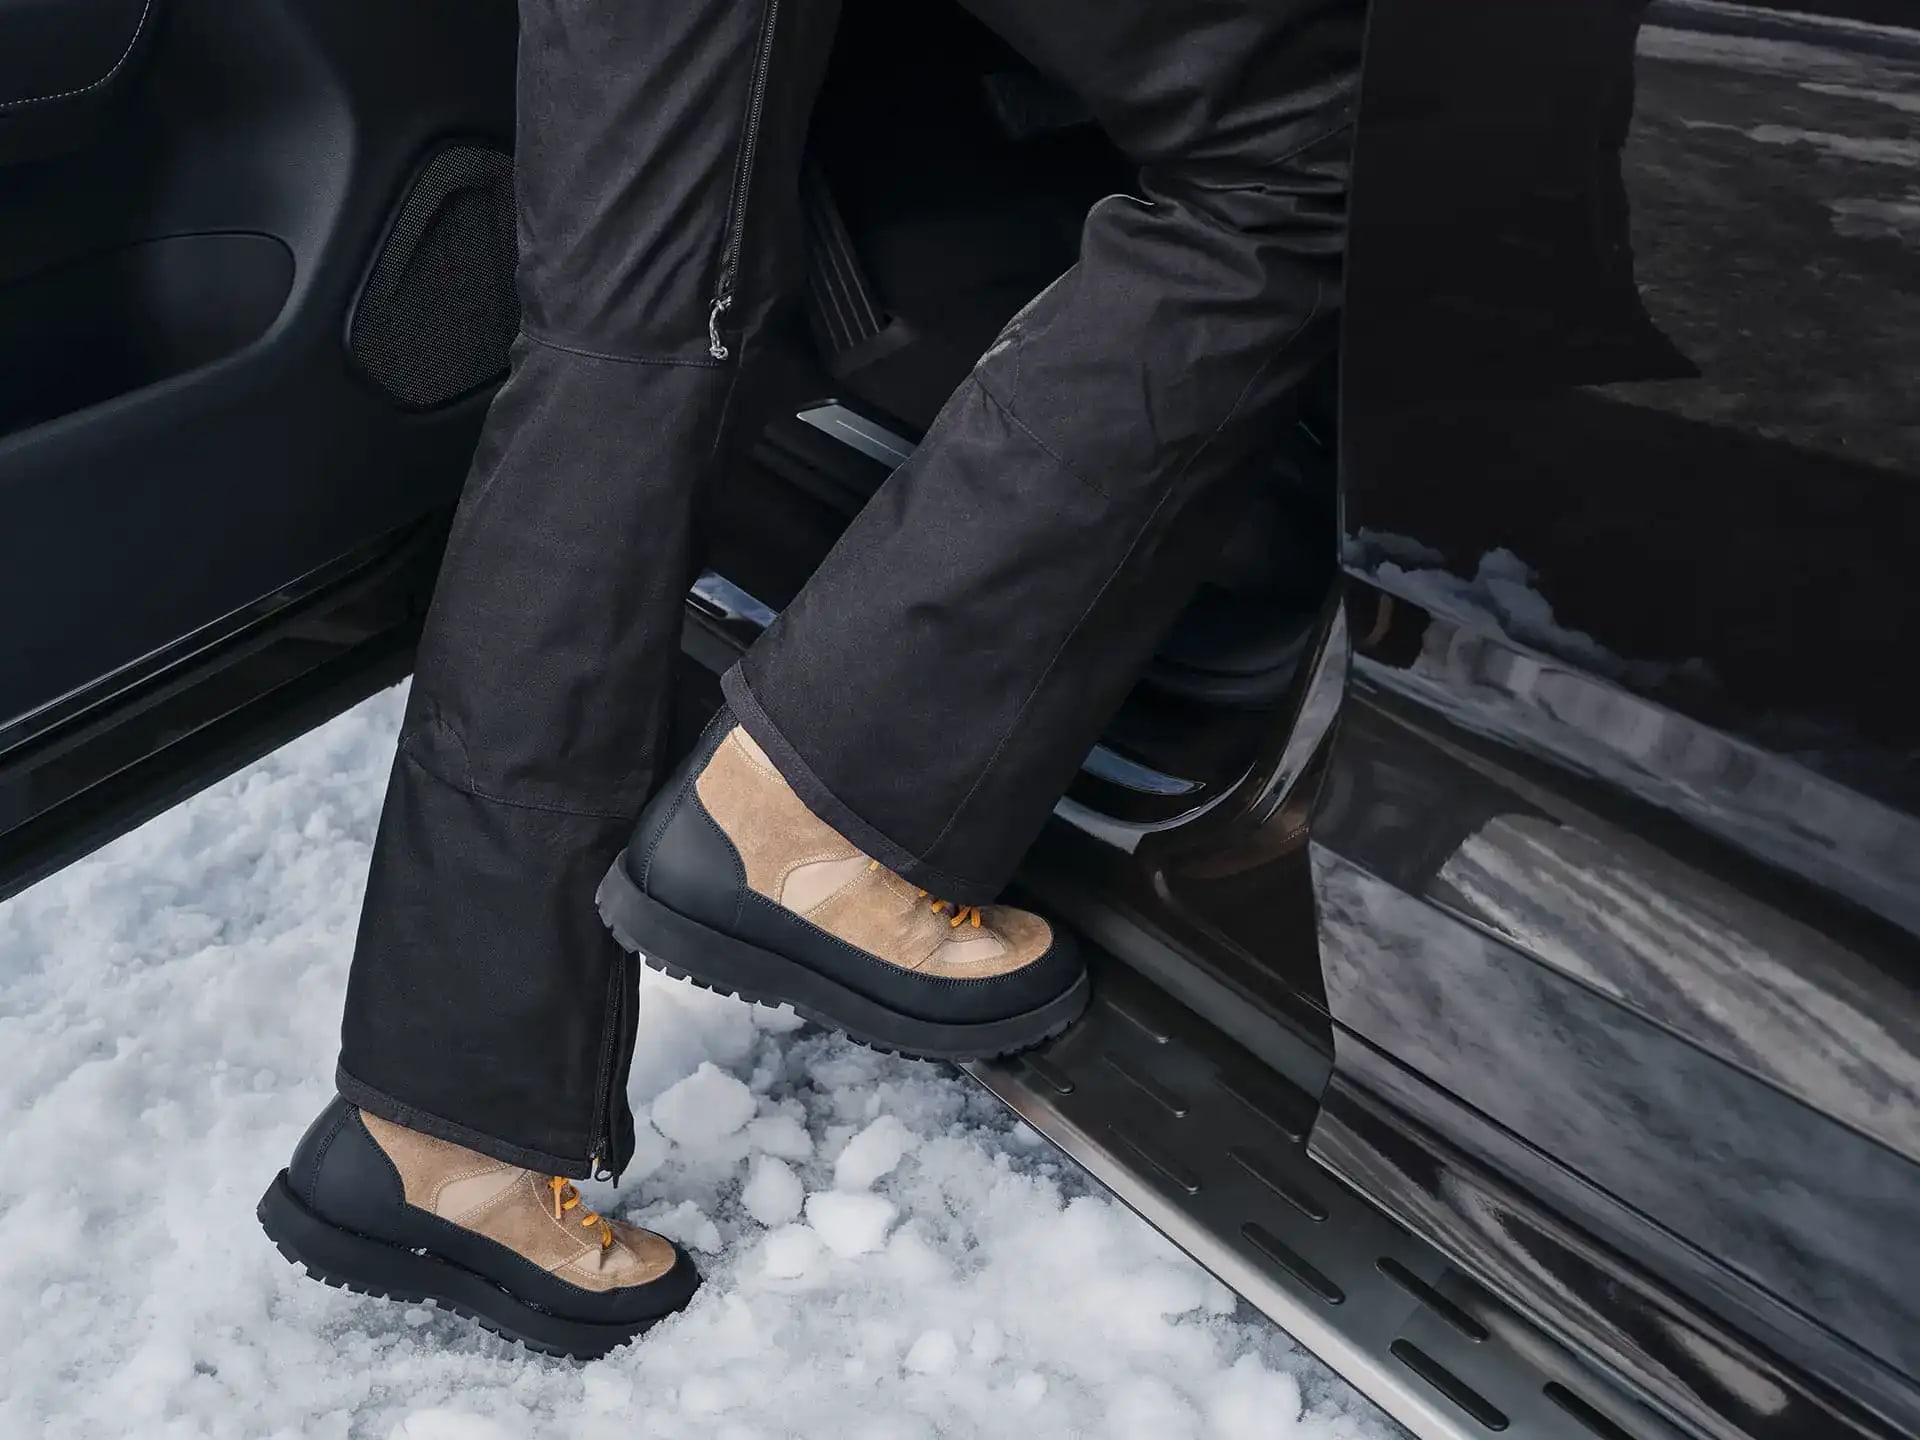 Eine Person in Winterstiefeln steigt auf ein Trittbrett in ein Volvo Fahrzeug.